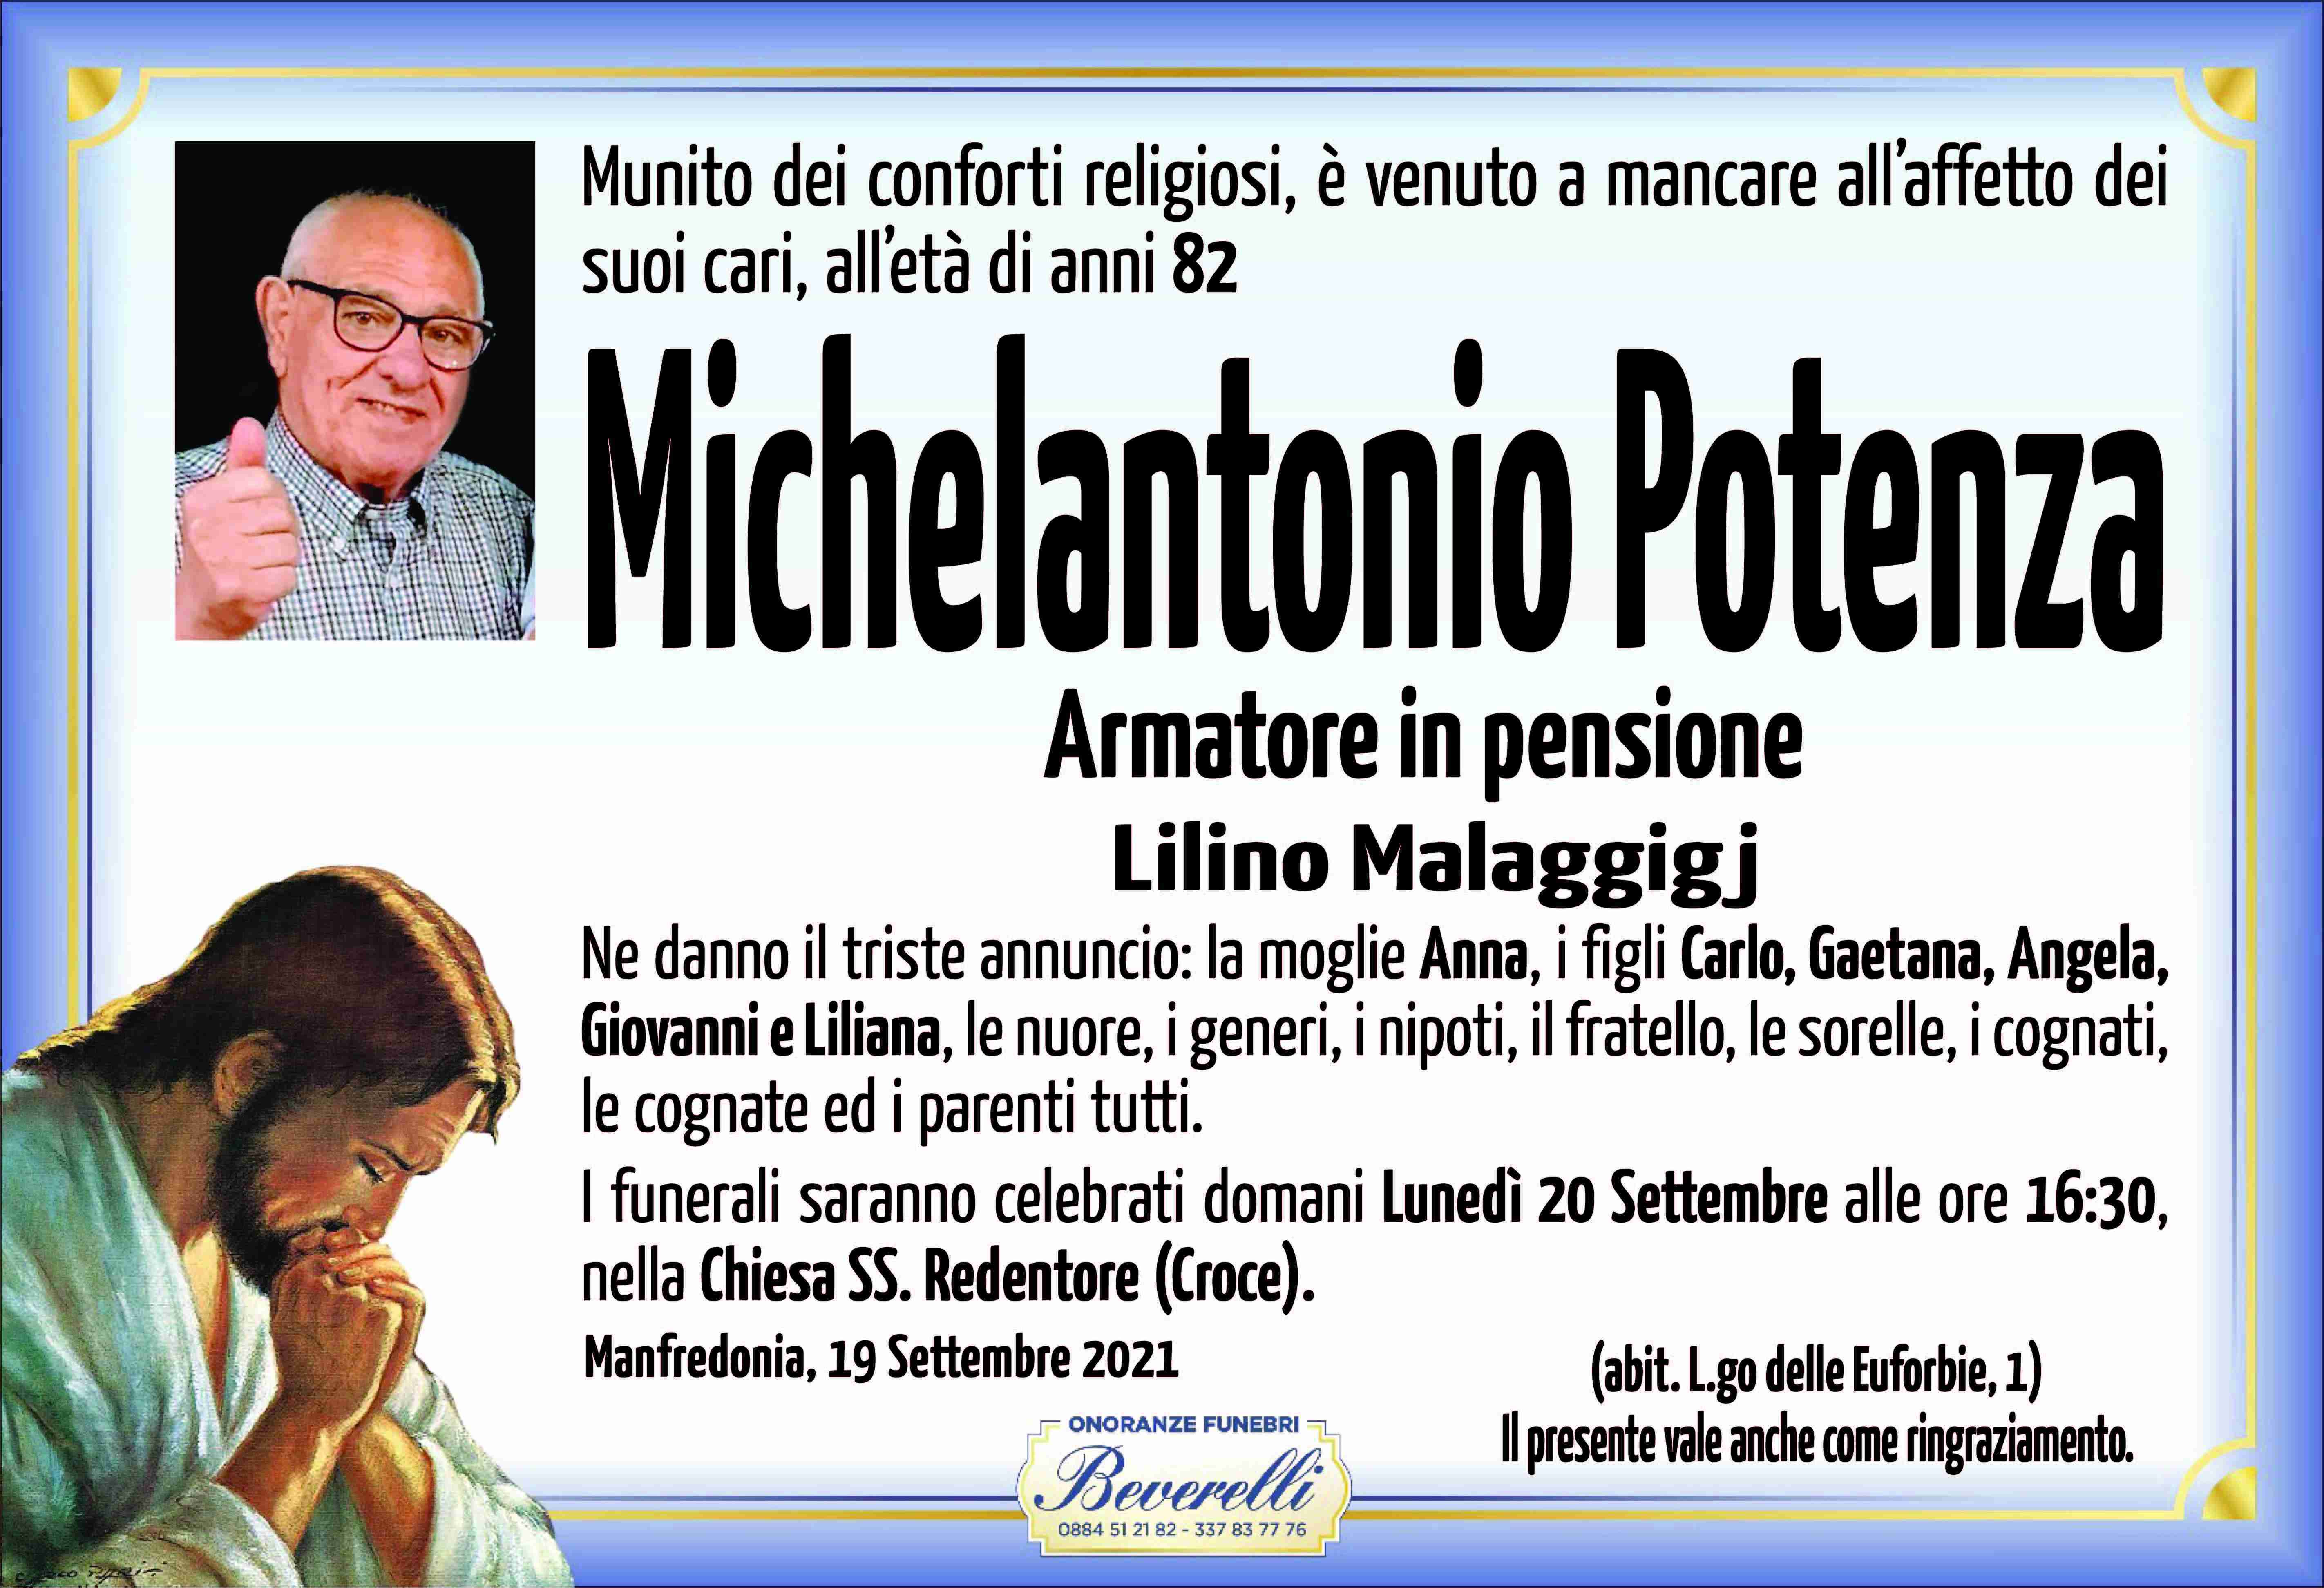 Michelantonio Potenza